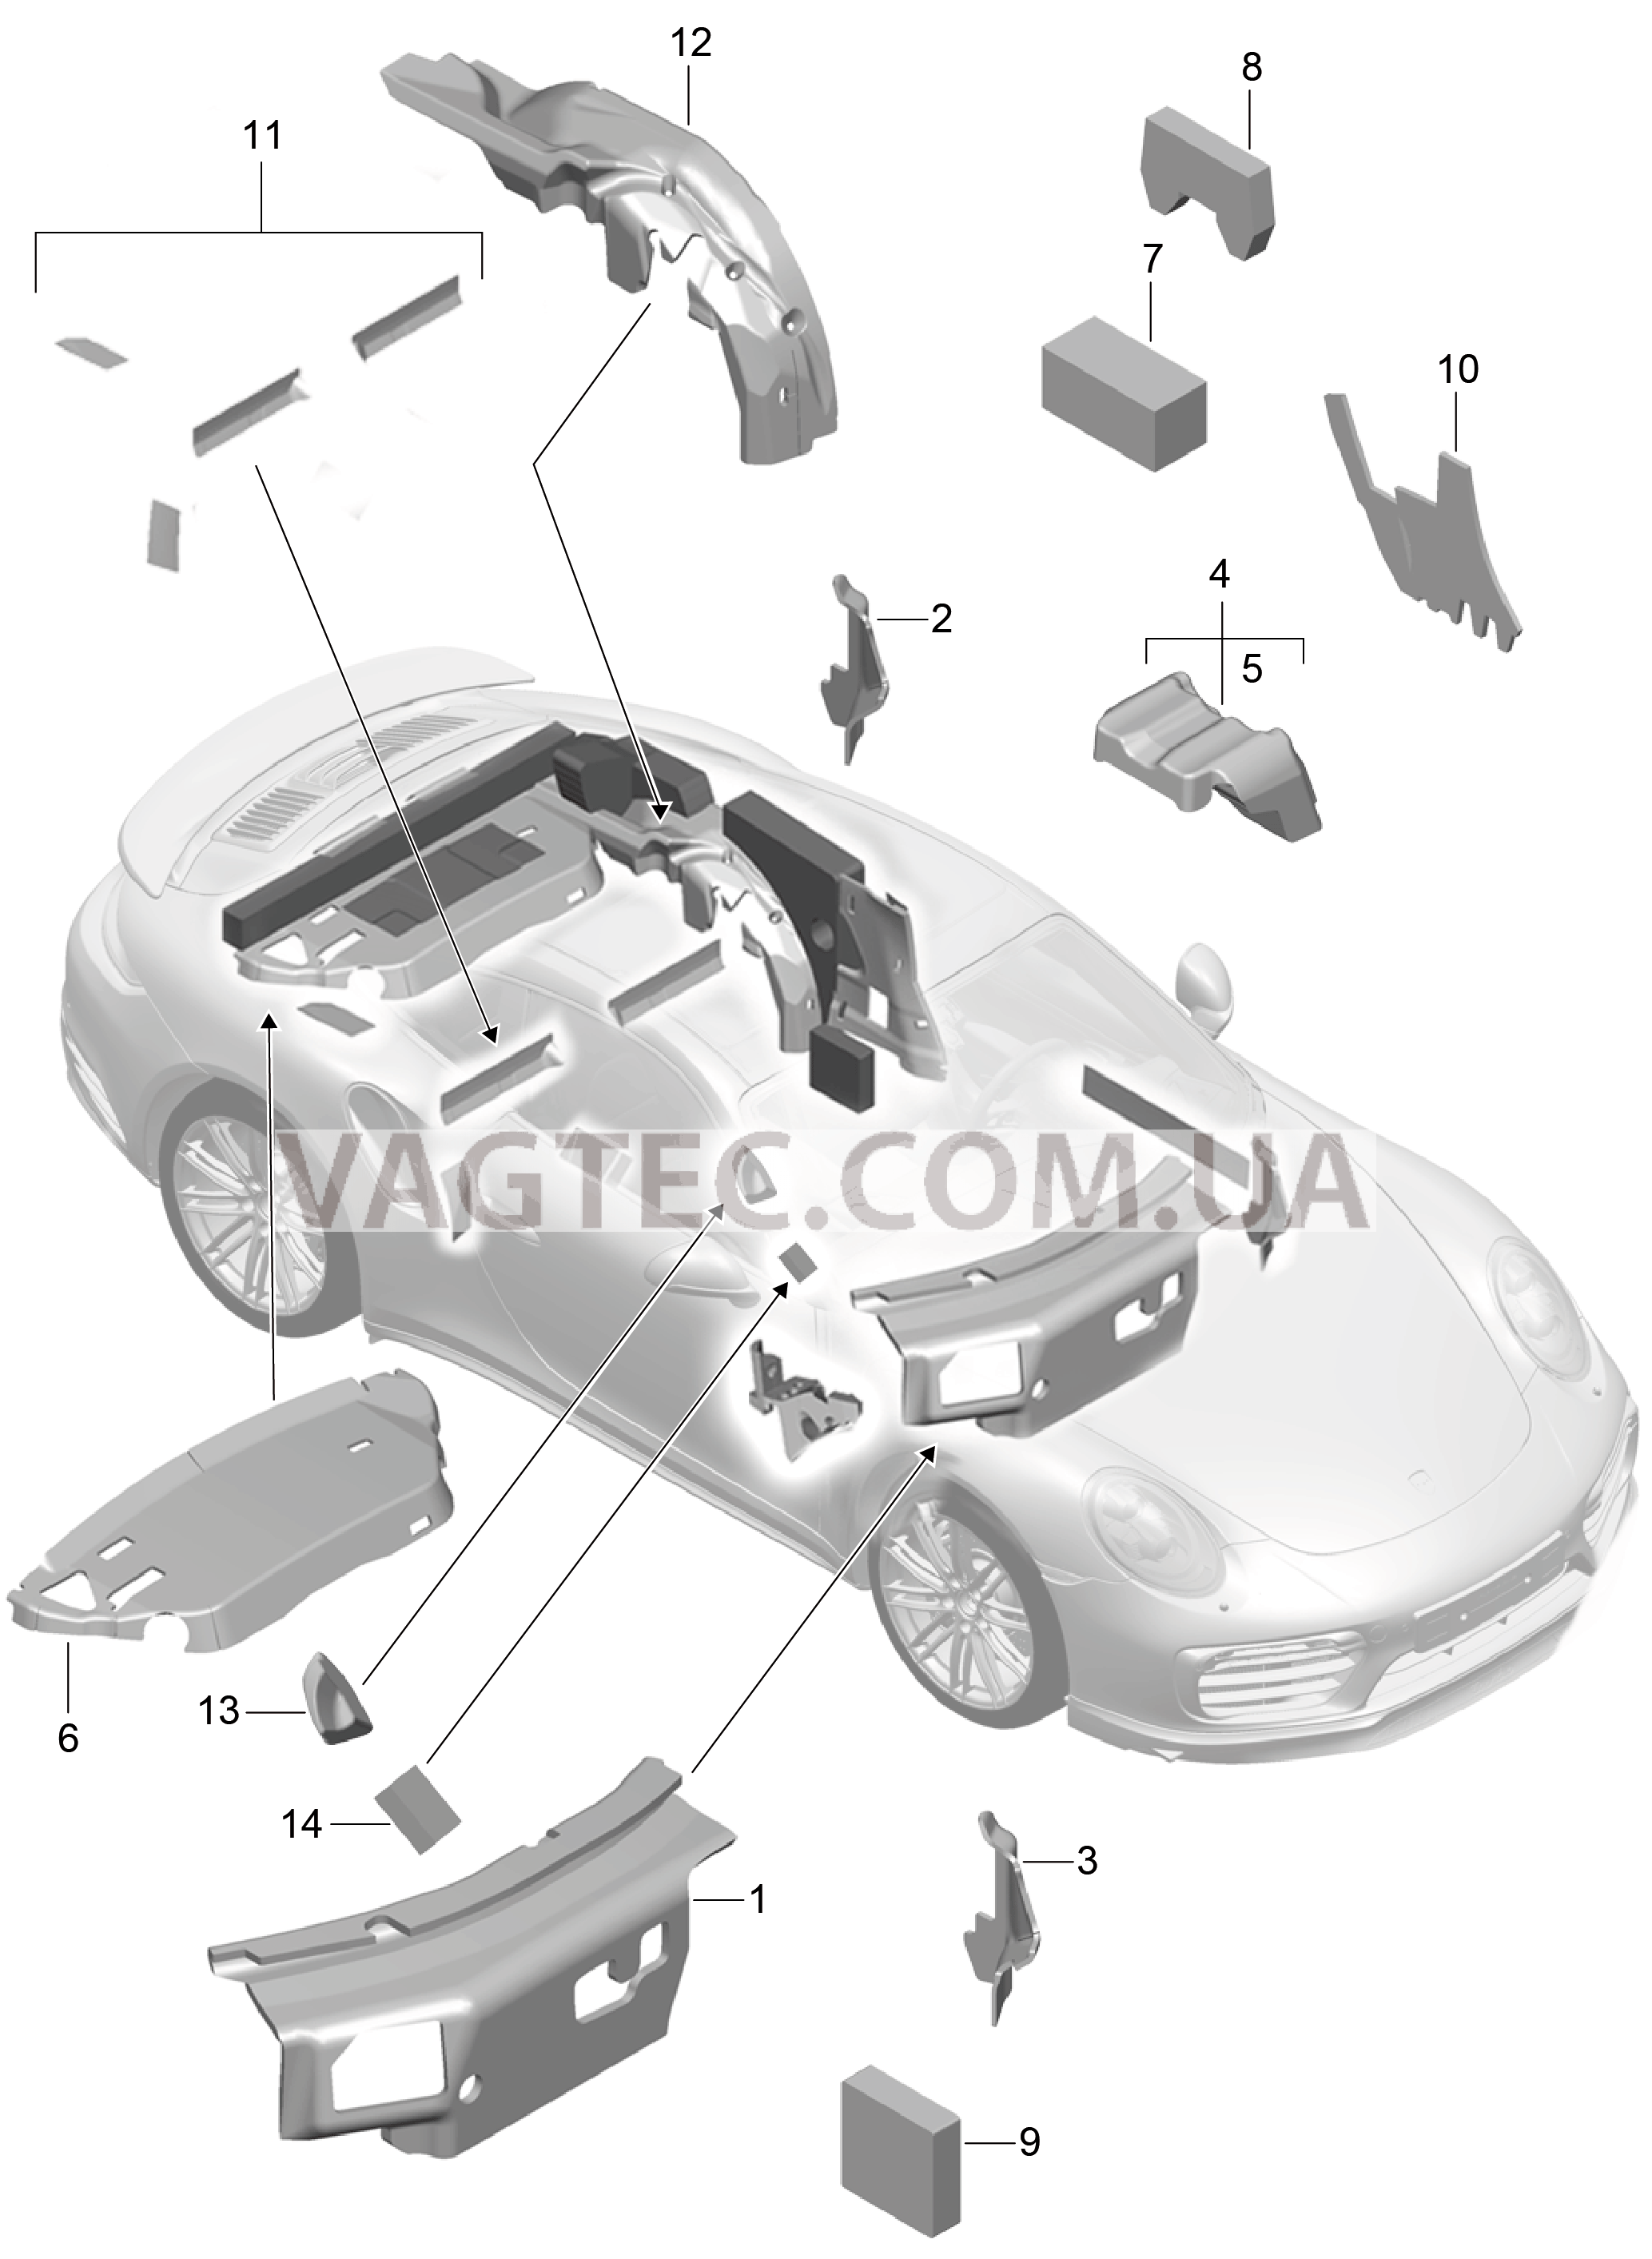 807-083 Кузов, Звукоизоляция 1
						
						CABRIO для PORSCHE Porsche991Turbo 2014-2017USA